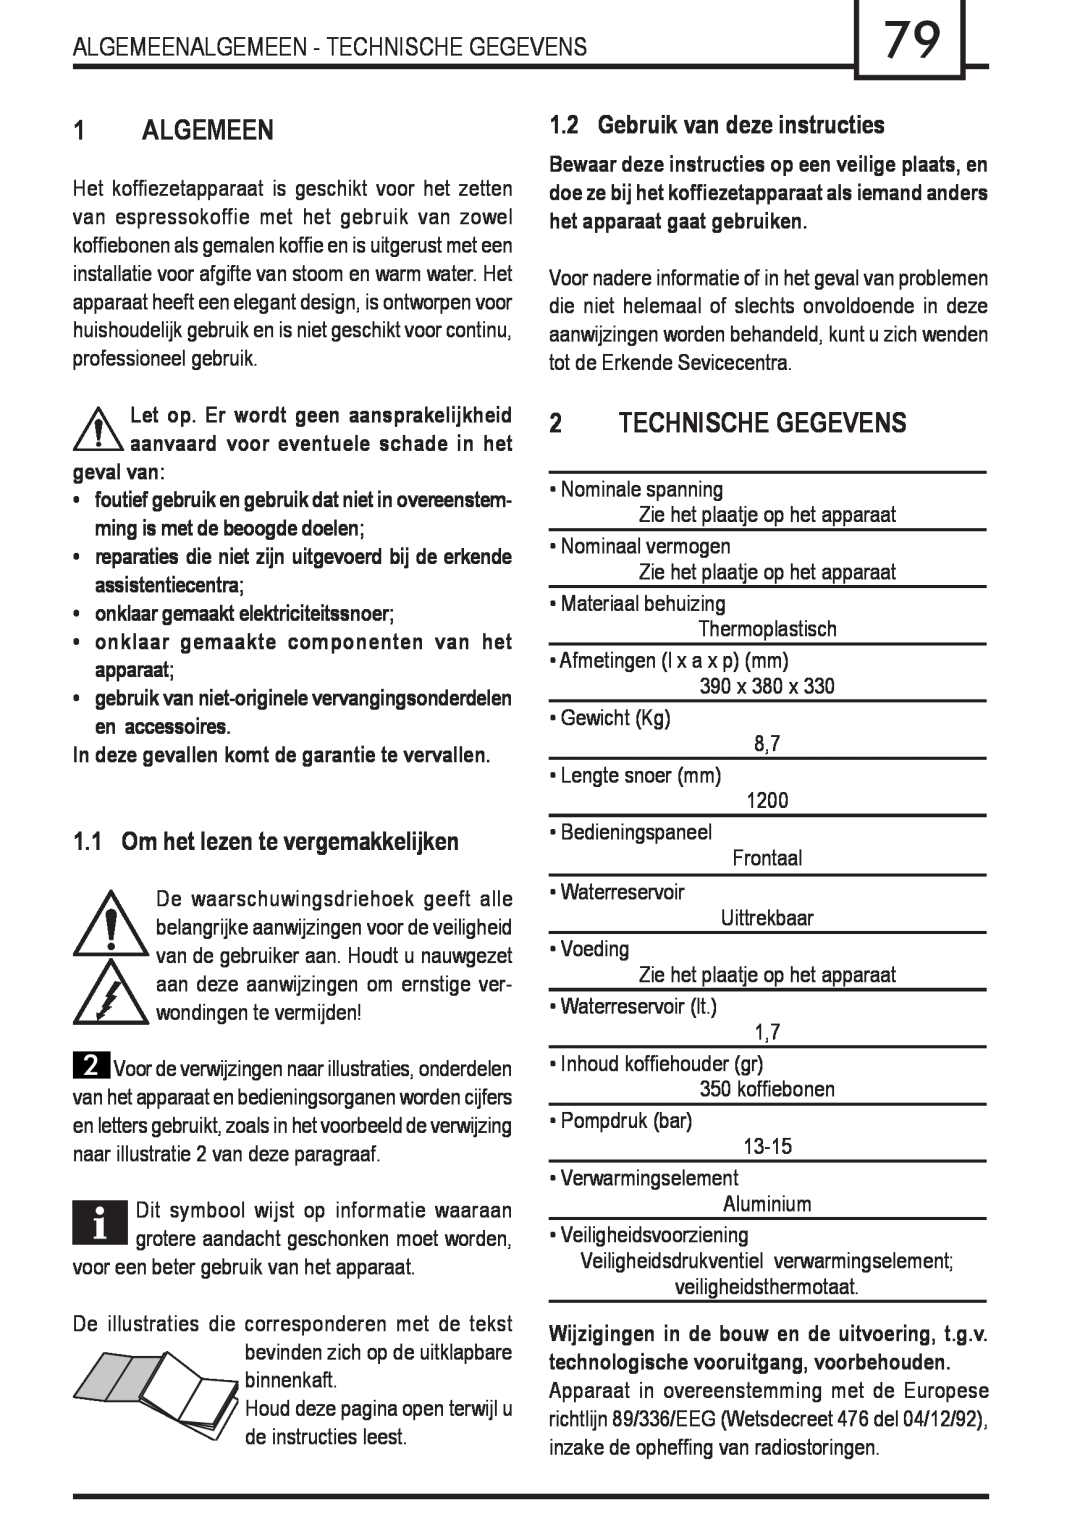 Gaggia Syncrony manual Algemeen, Technische Gegevens, geval van, onklaar gemaakt elektriciteitssnoer 